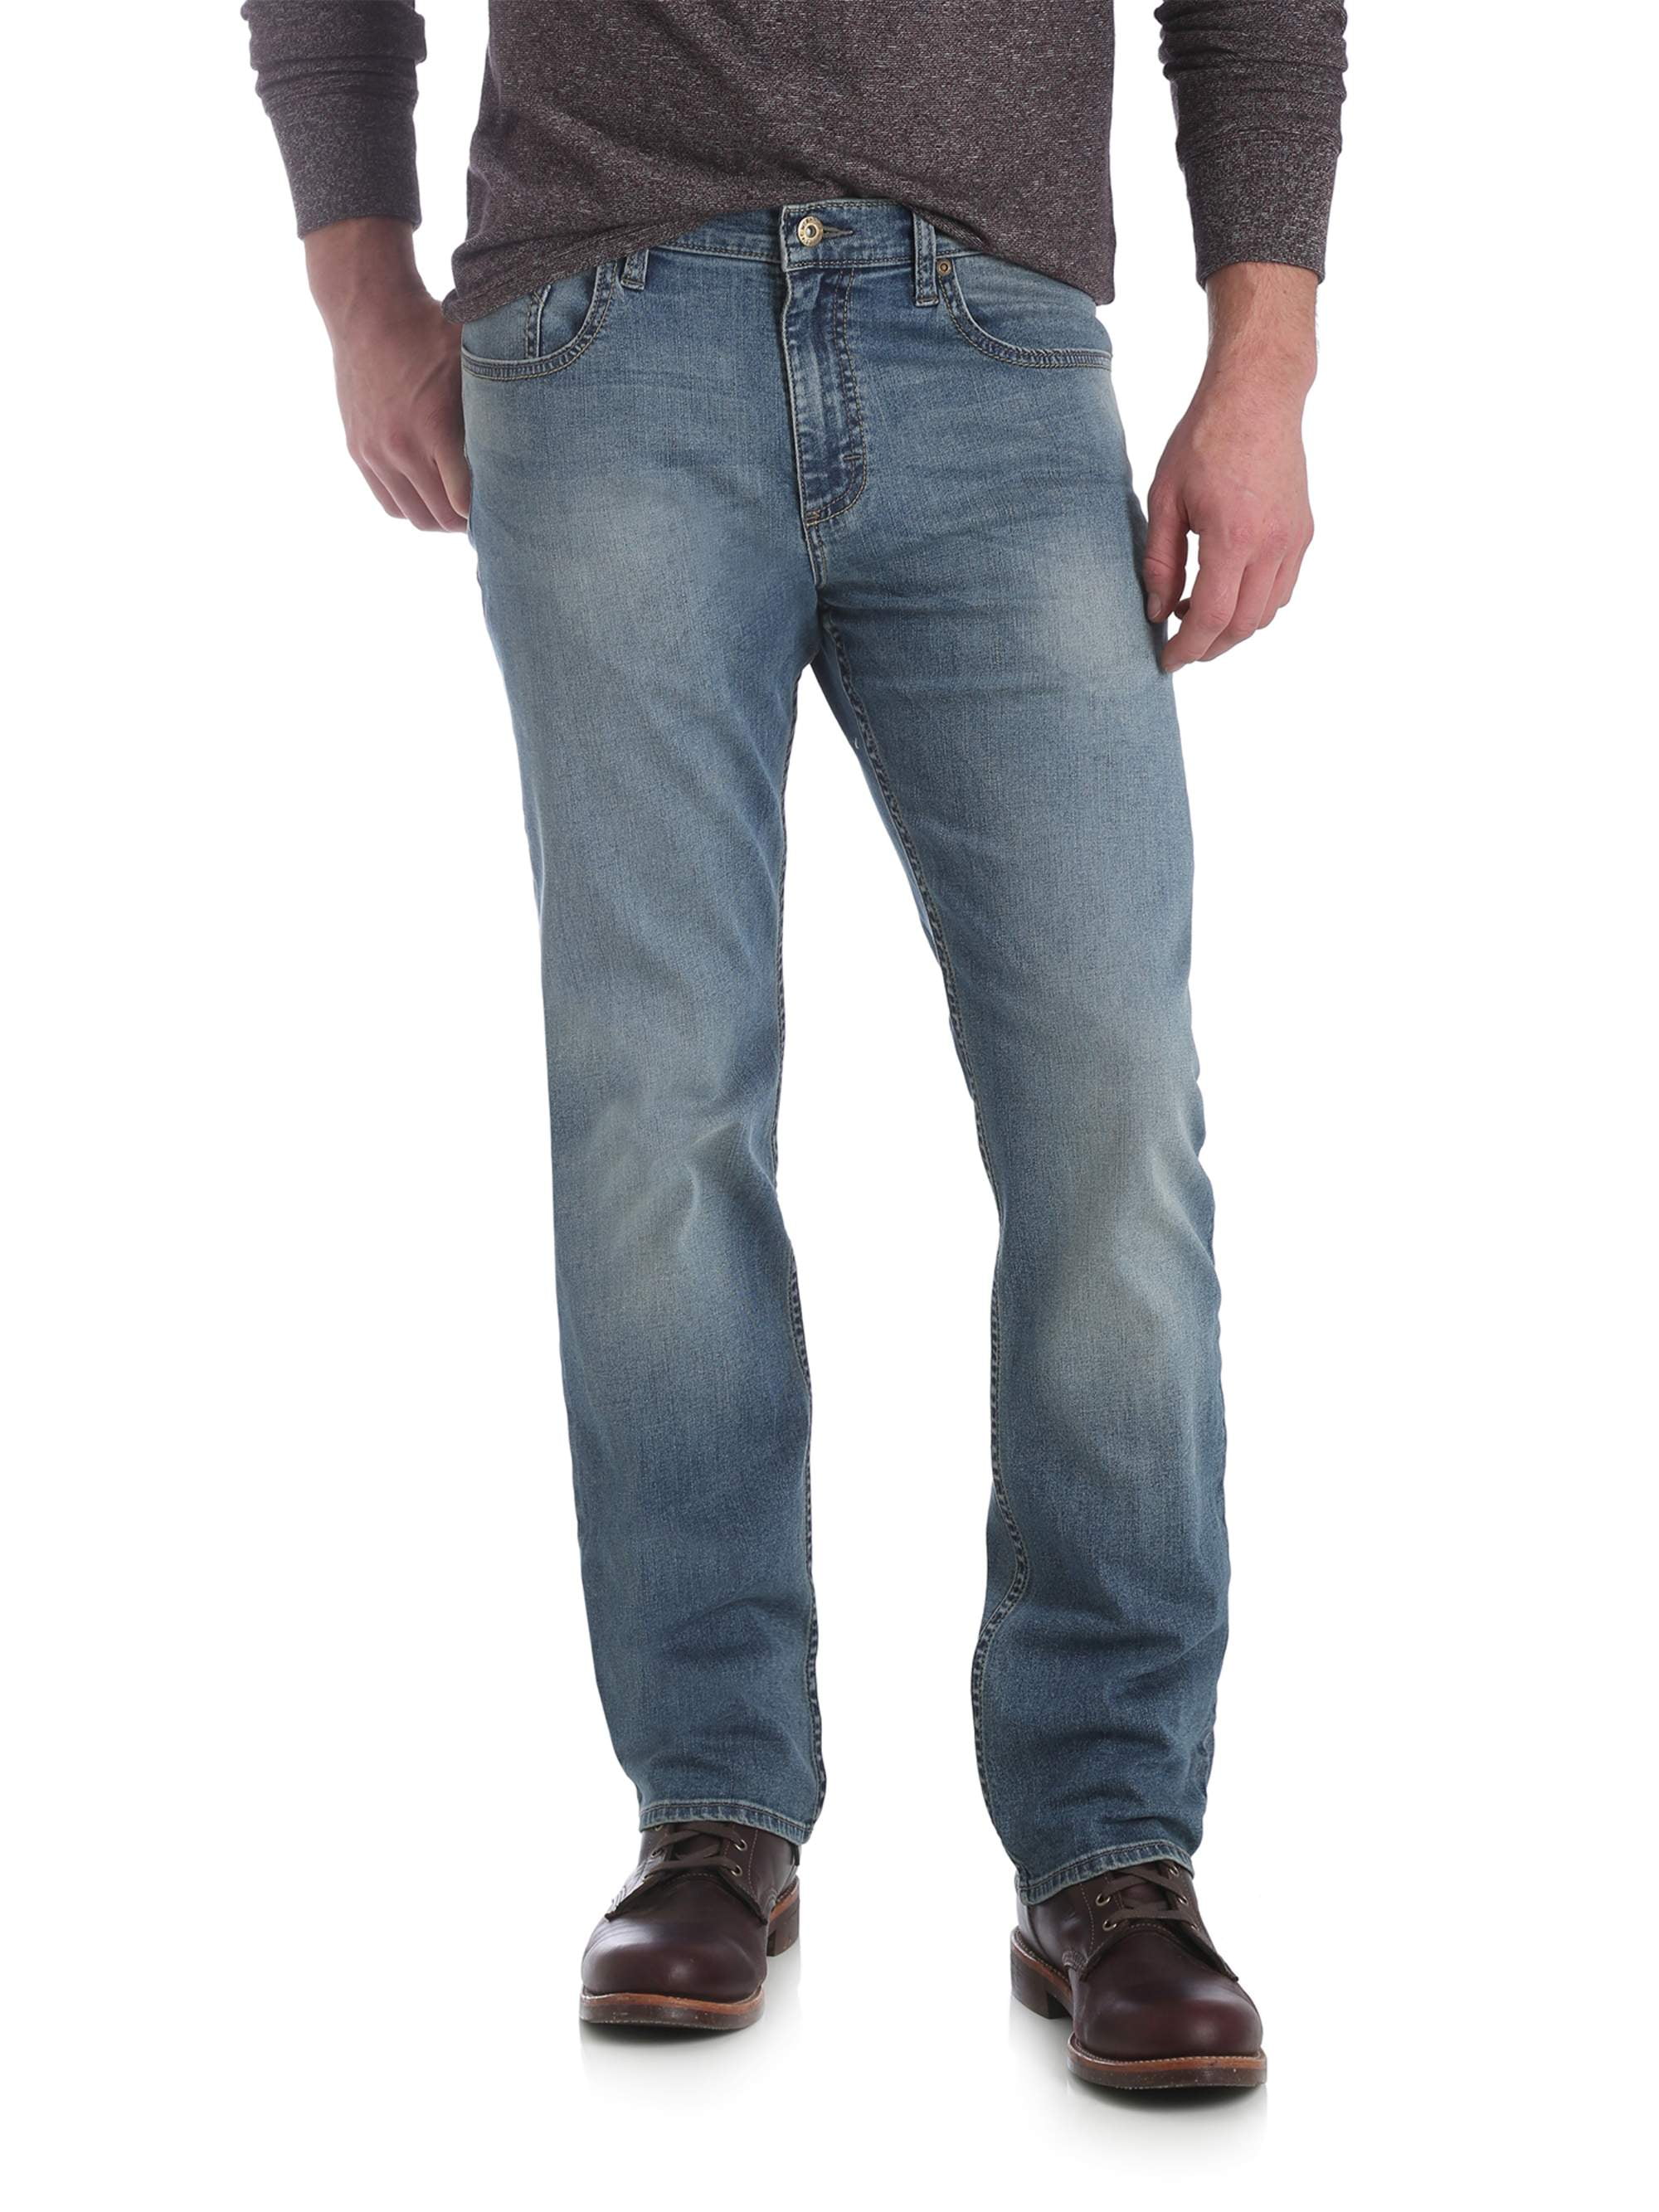 wrangler jeans men's slim straight